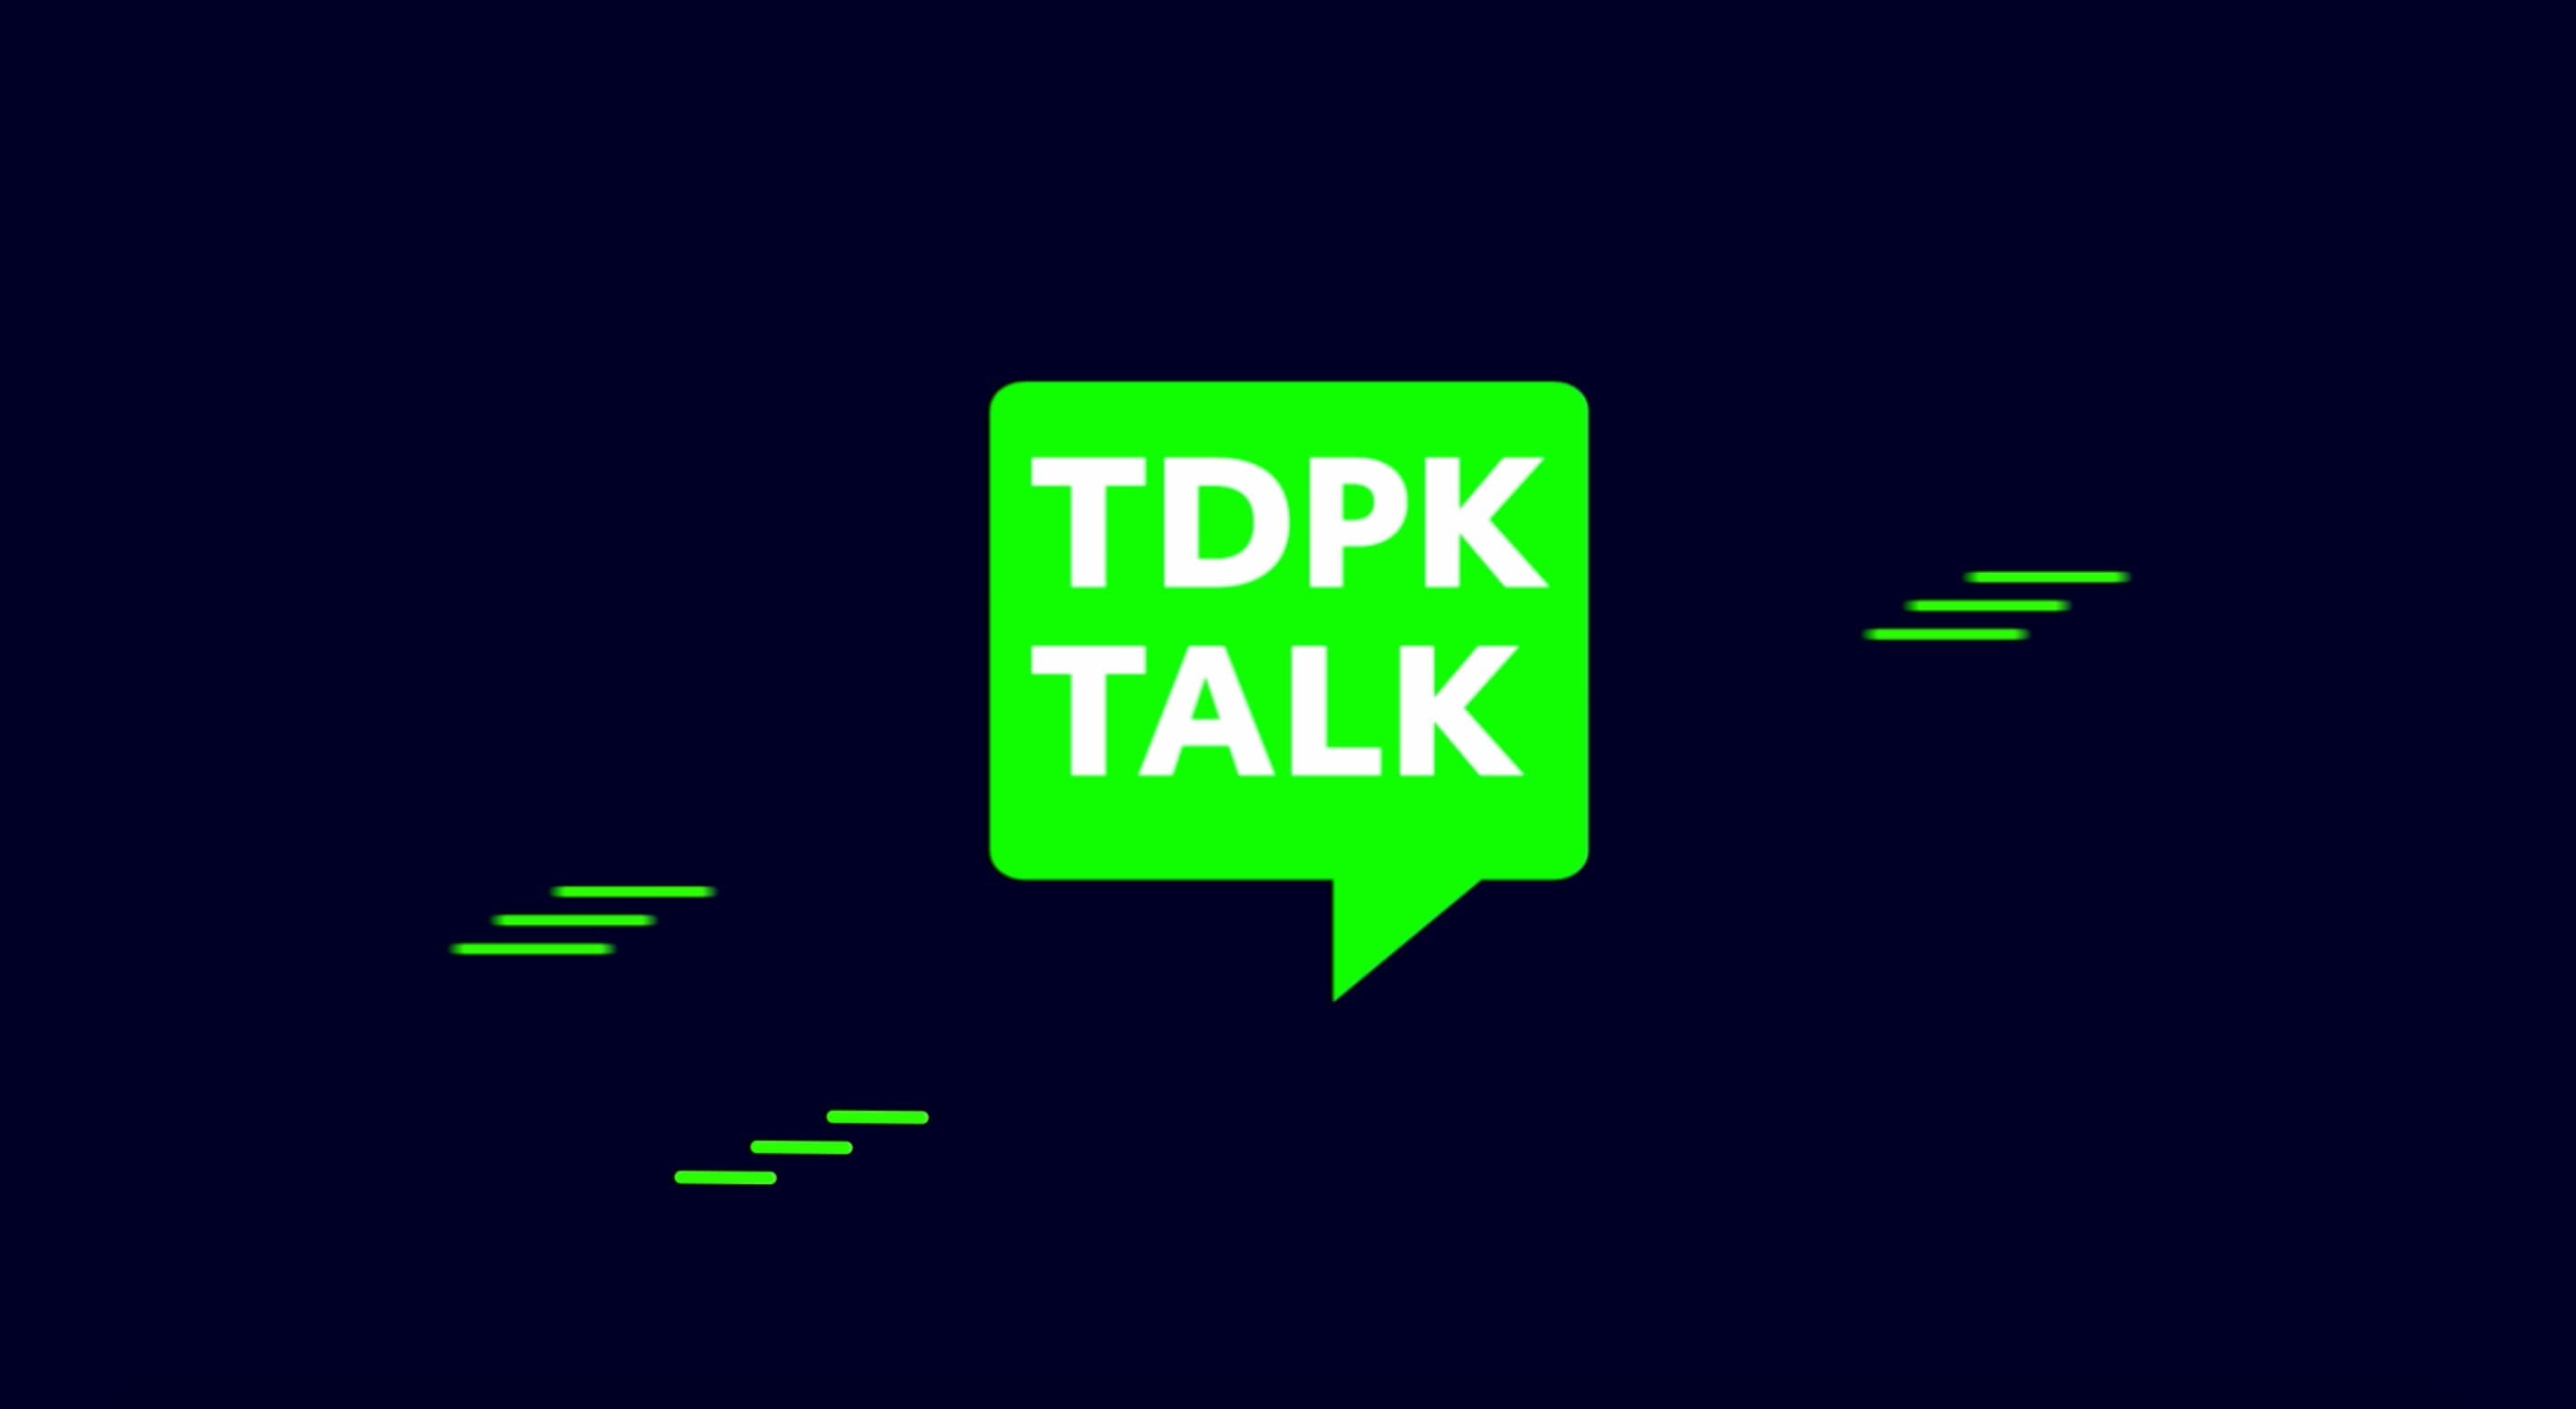 โฉมใหม่ของ TDPK TALK โดย ทรู ดิจิทัล พาร์ค